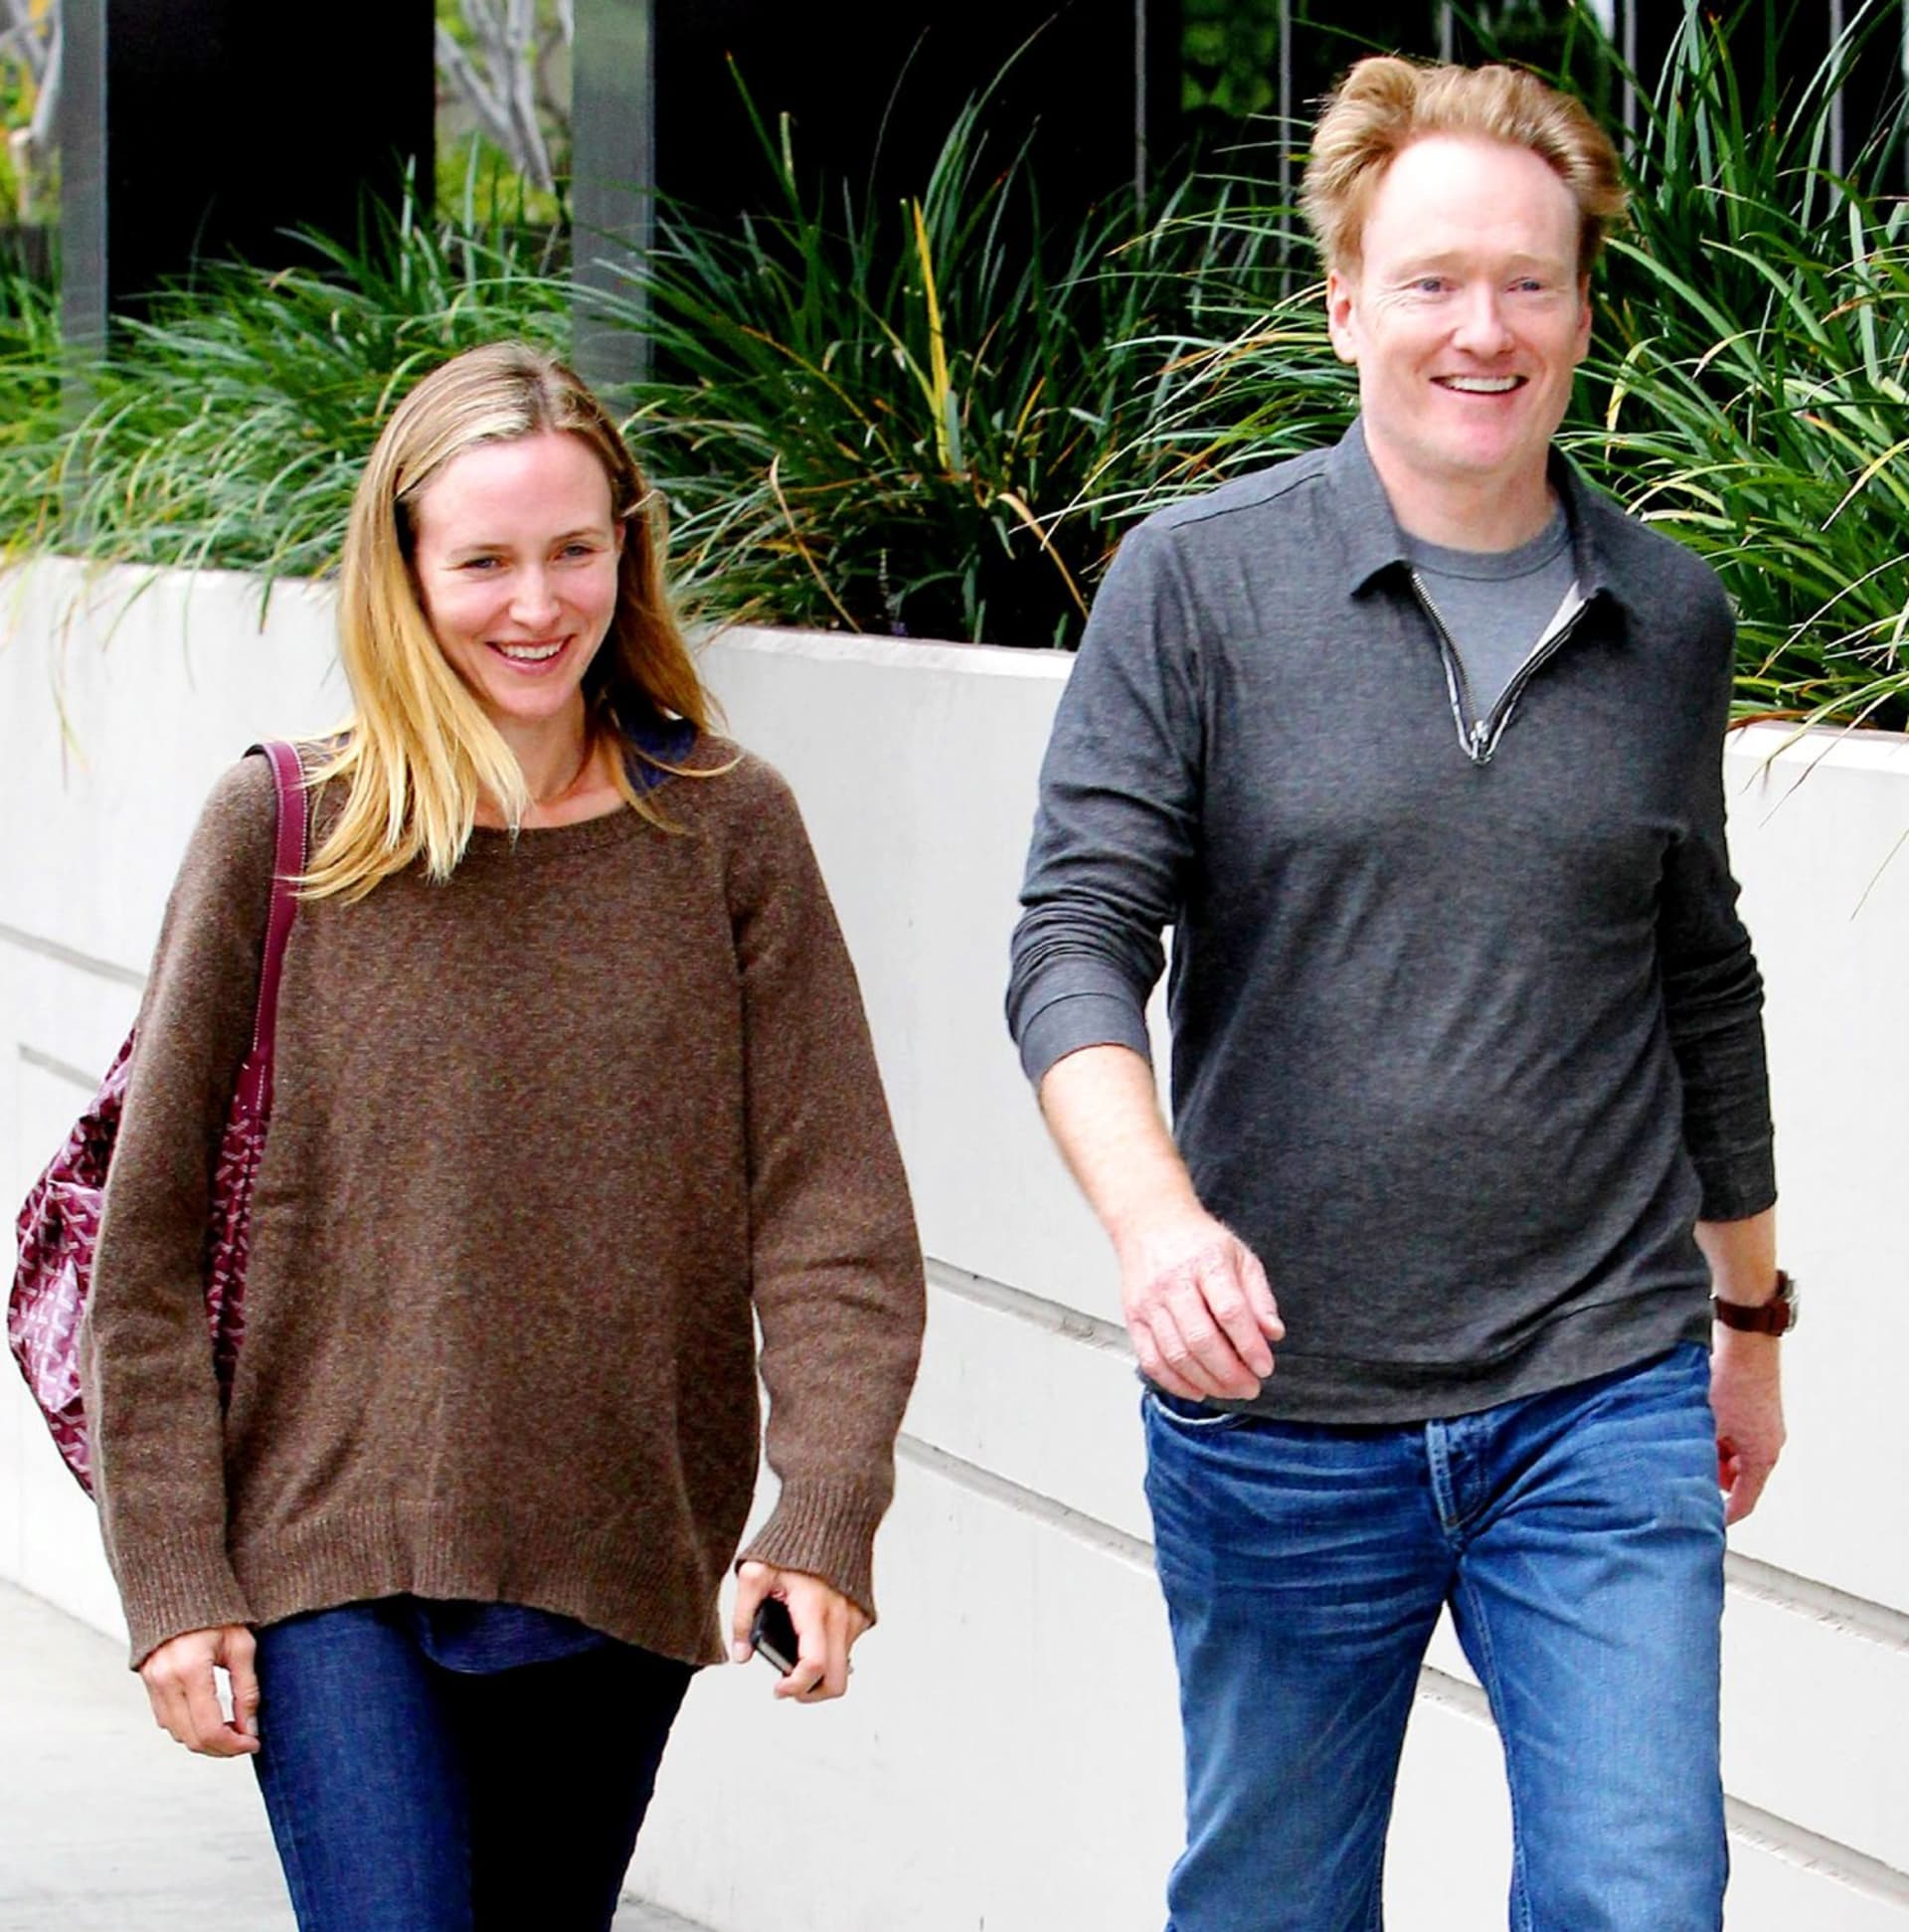 Herec Conan O'Brien si vytvořil šťastný domov s textařkou Lizou Powel.